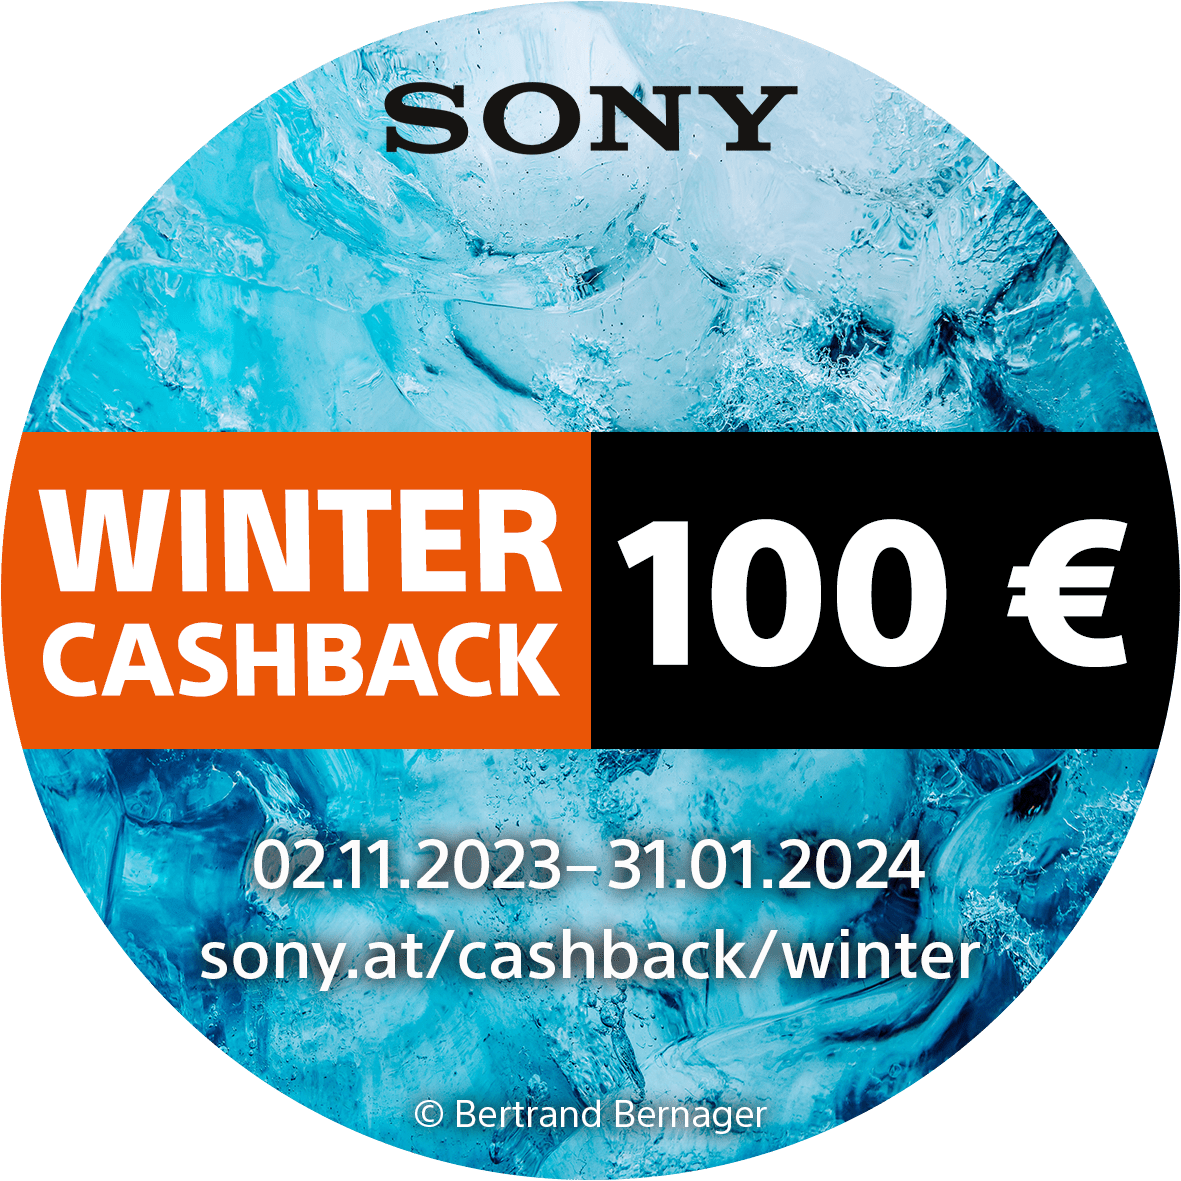 Sony_Winter_Cashback_02112023_bis_31012024_100